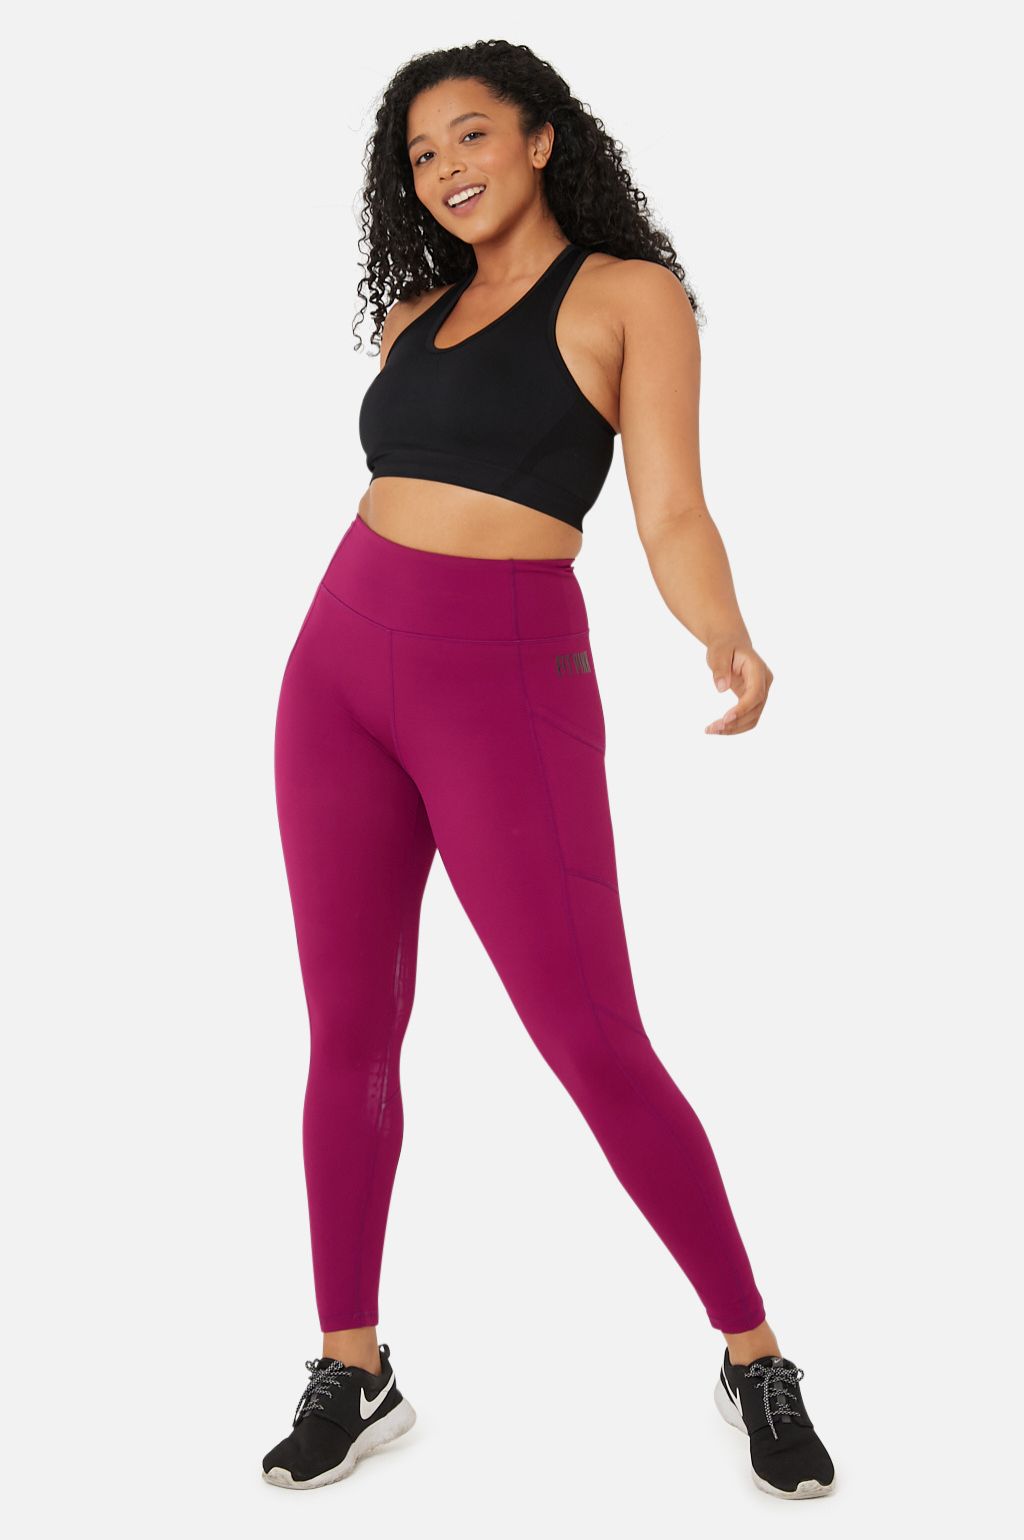 Paragon Legging (Guava)  Black leggings, Legging, Pink workout